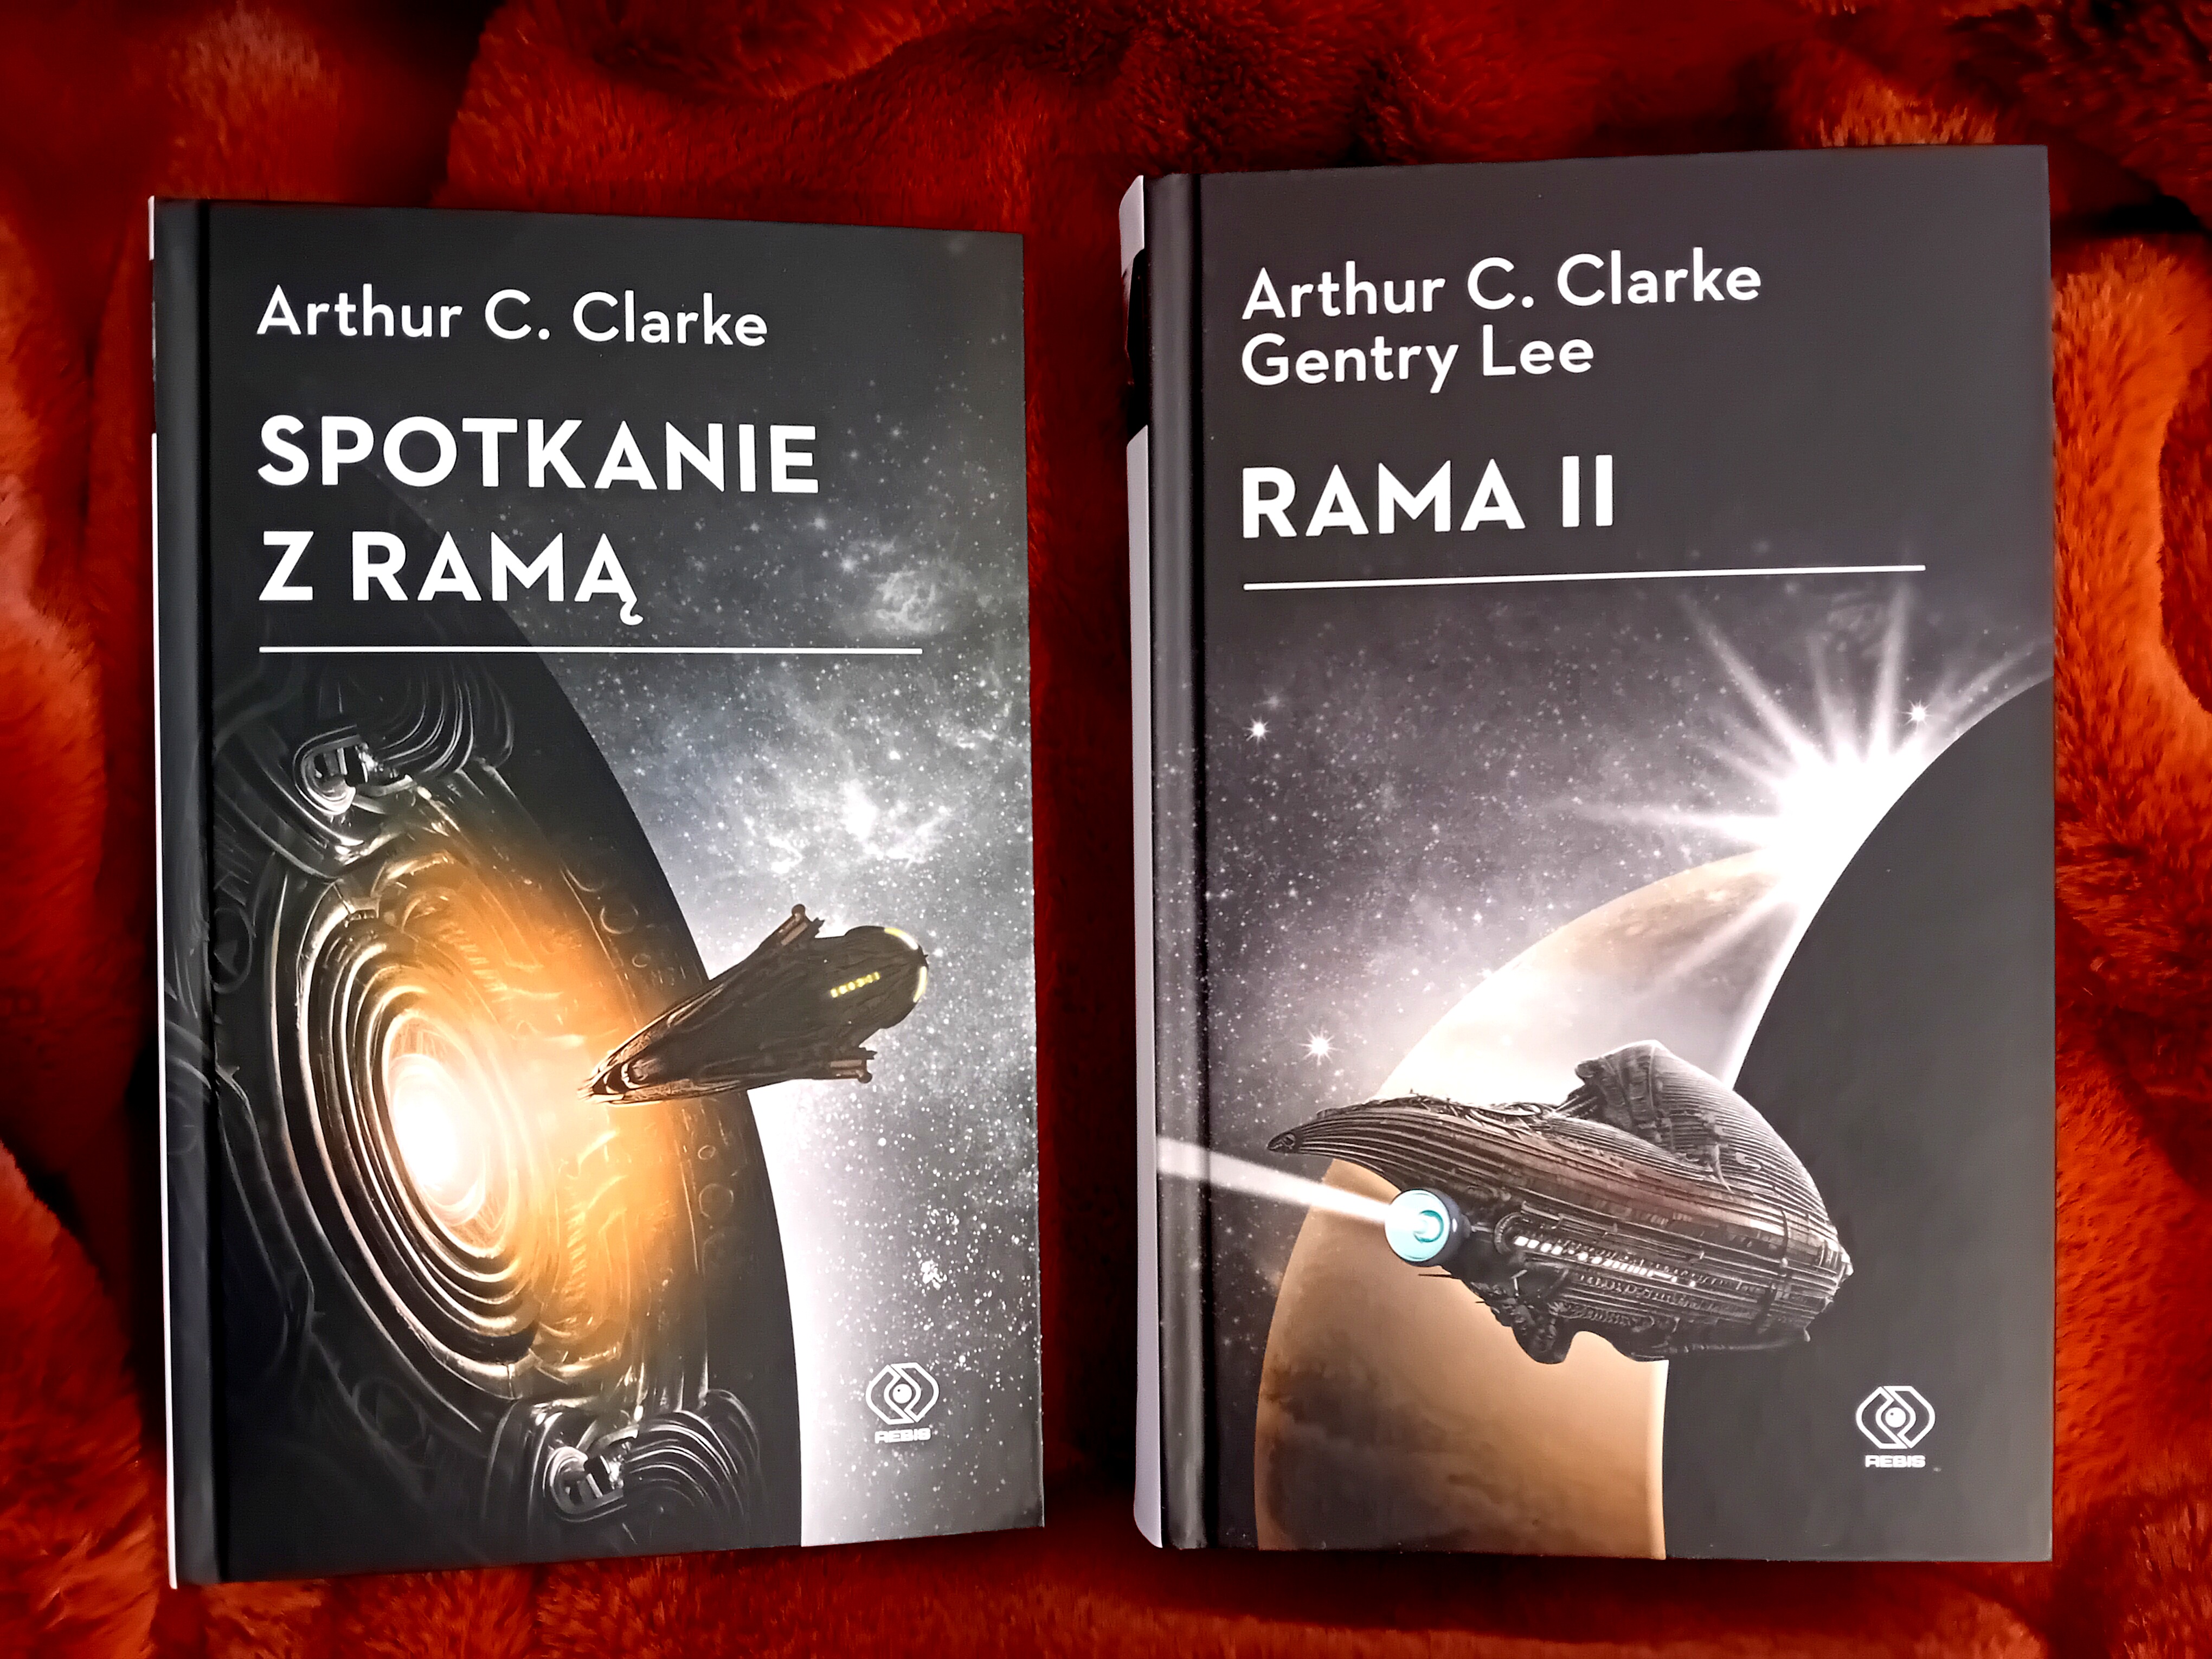 "Rama II", A. C. Clarke'a w serii Wehikuł czasu juz 31.10 w księgarniach